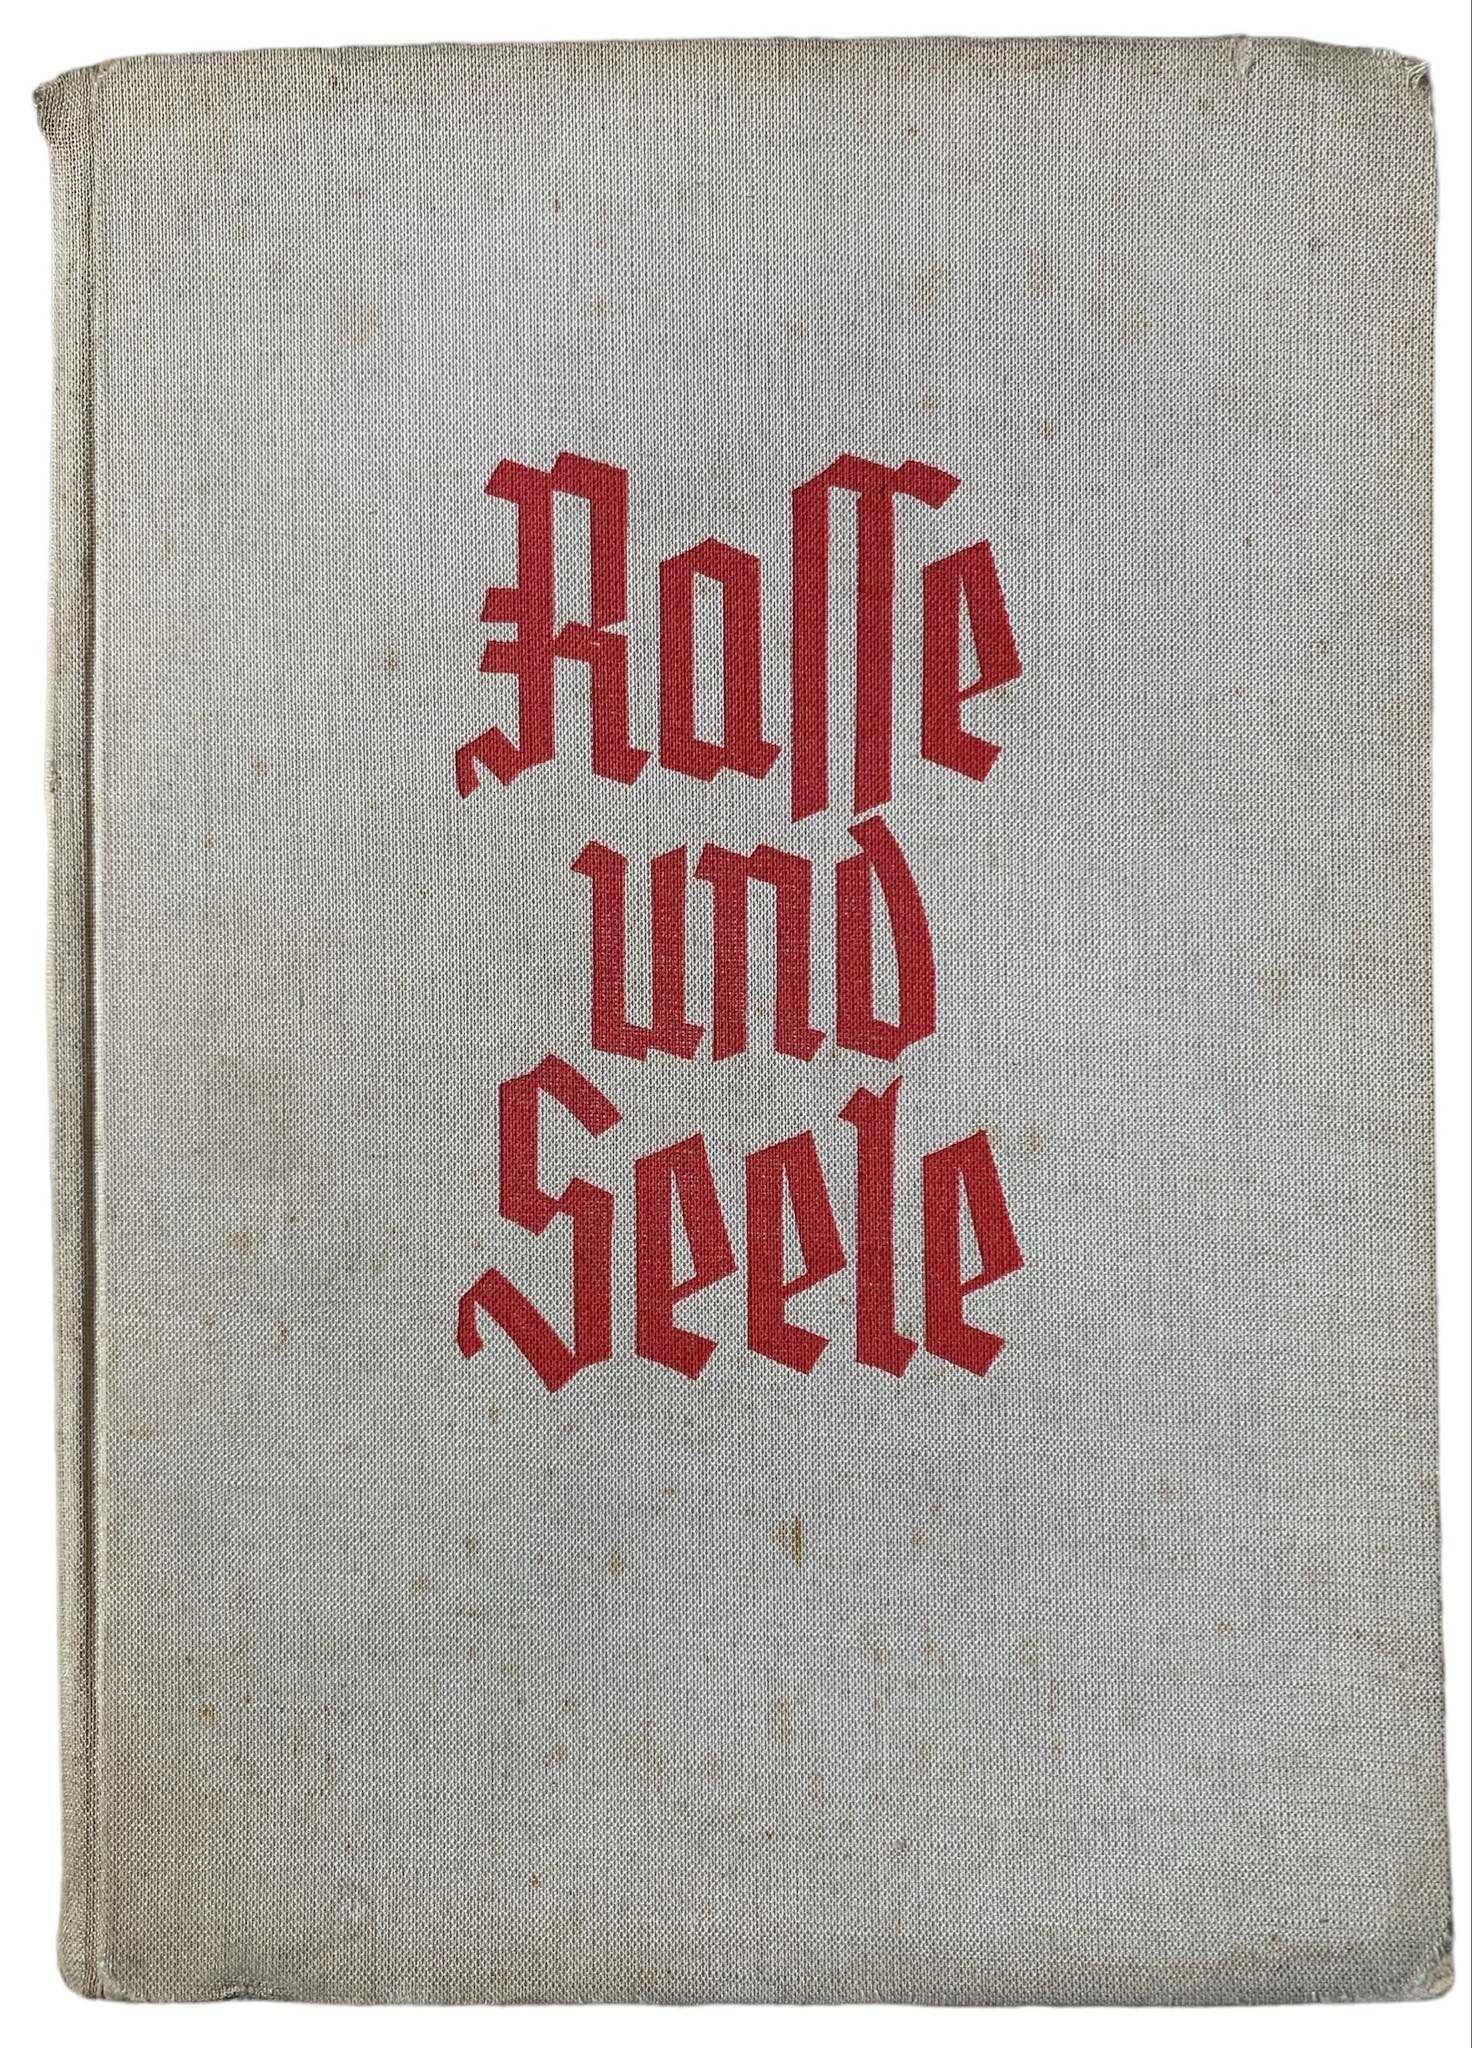 III Rzesza: Rasse und Seele Rasa i Dusza 1939